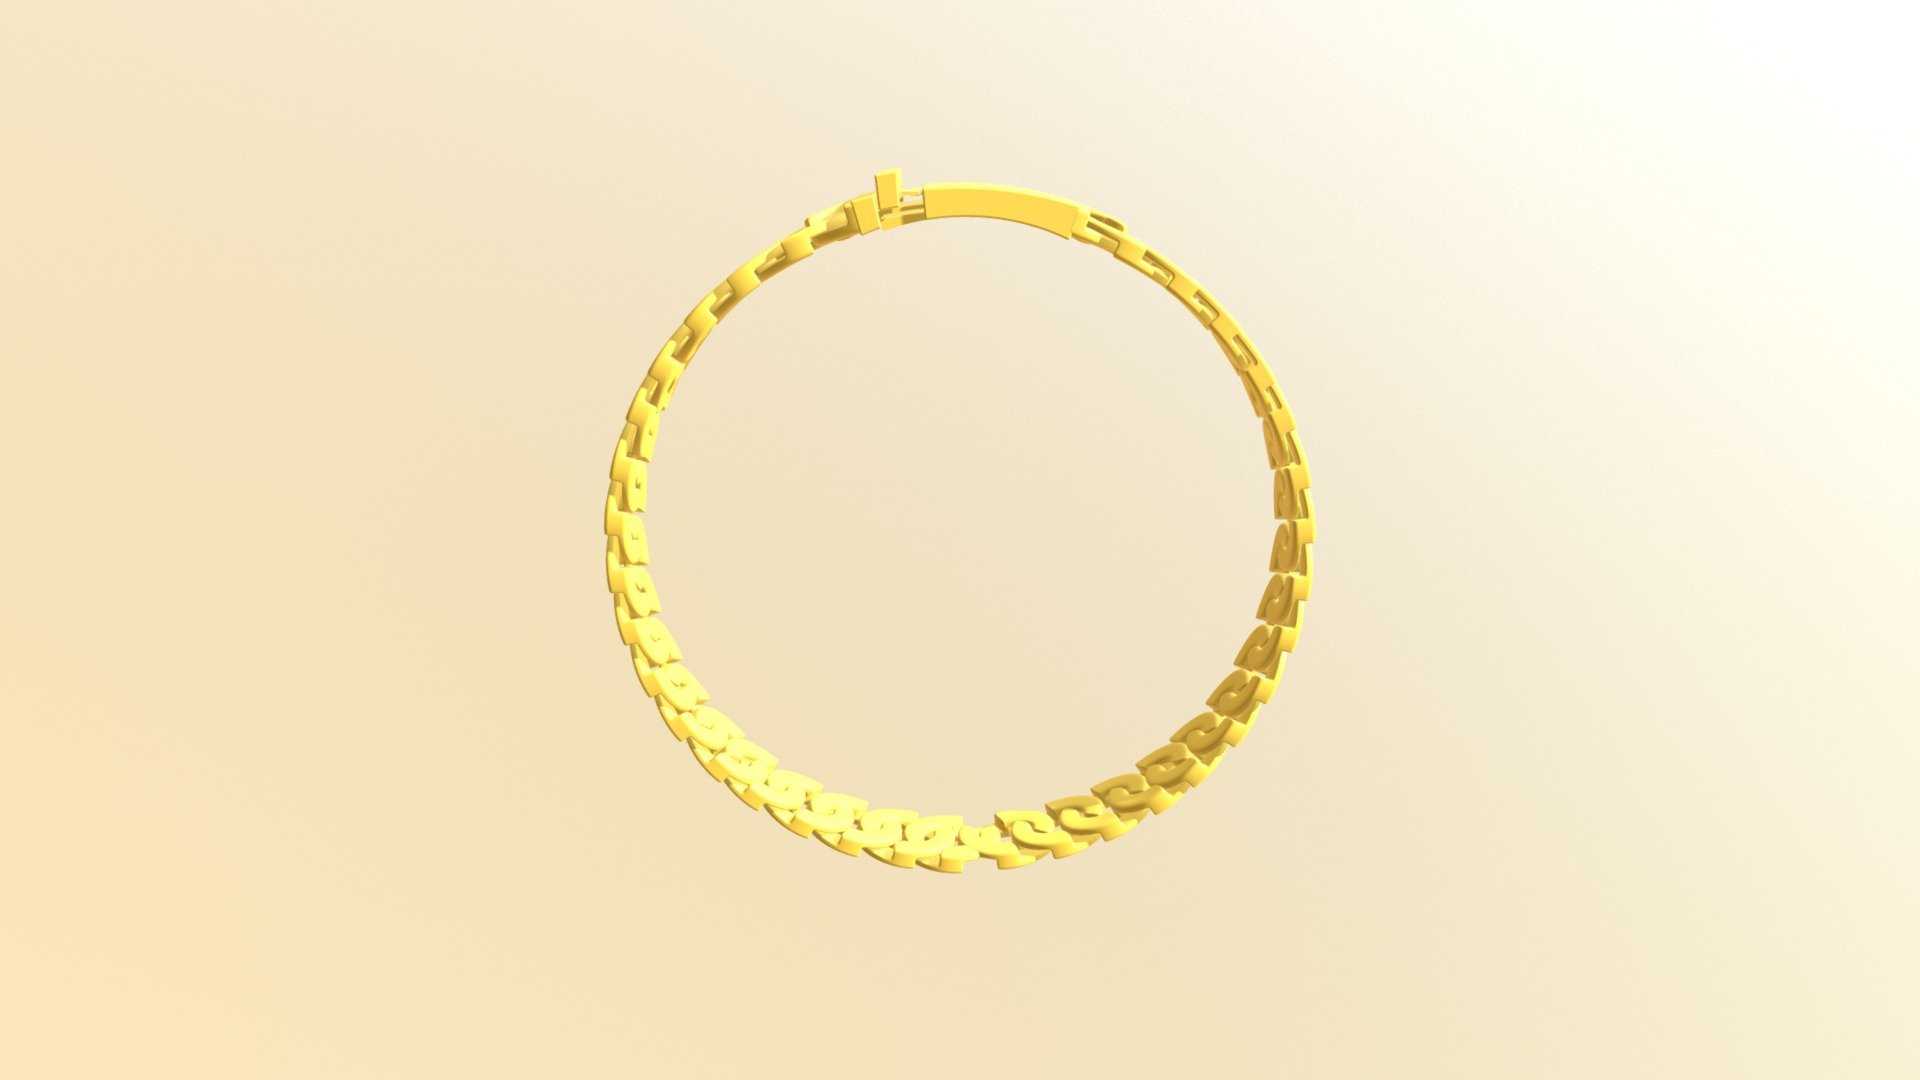 bracelet one - 3D model by workingshubham [11ebe36] - Sketchfab